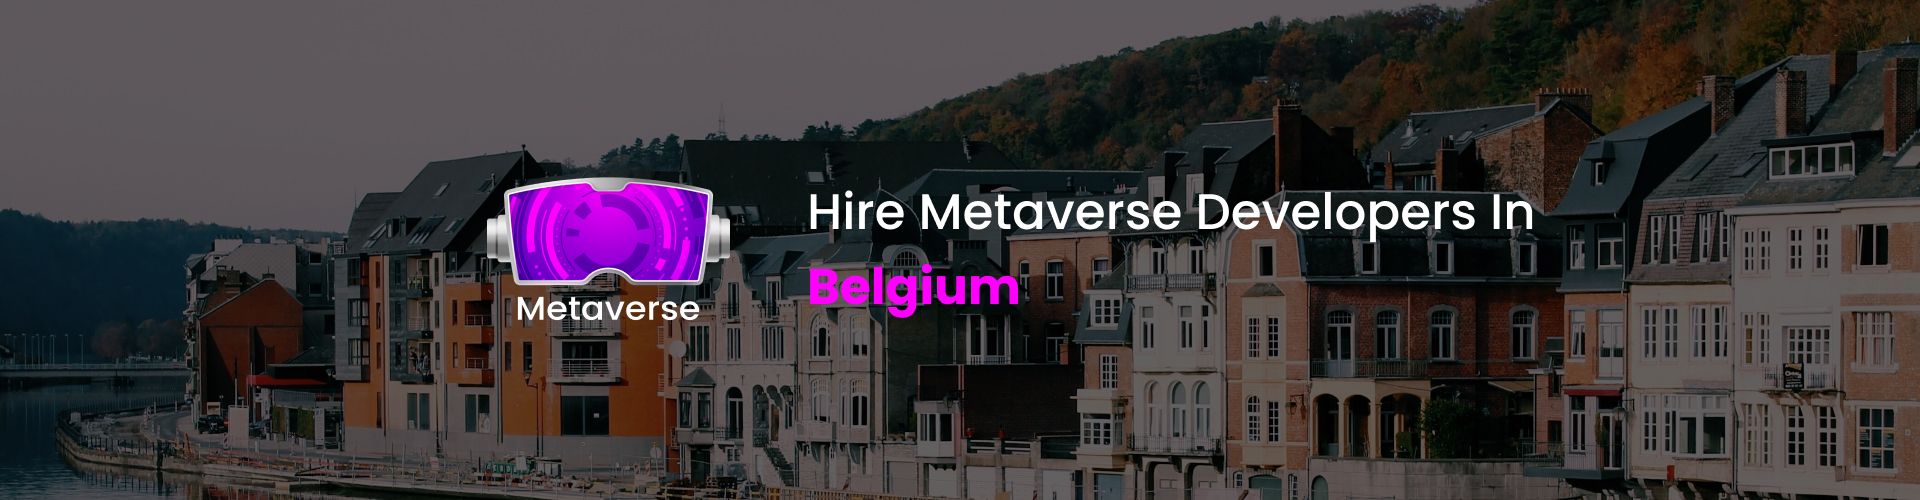 metaverse developers in belgium